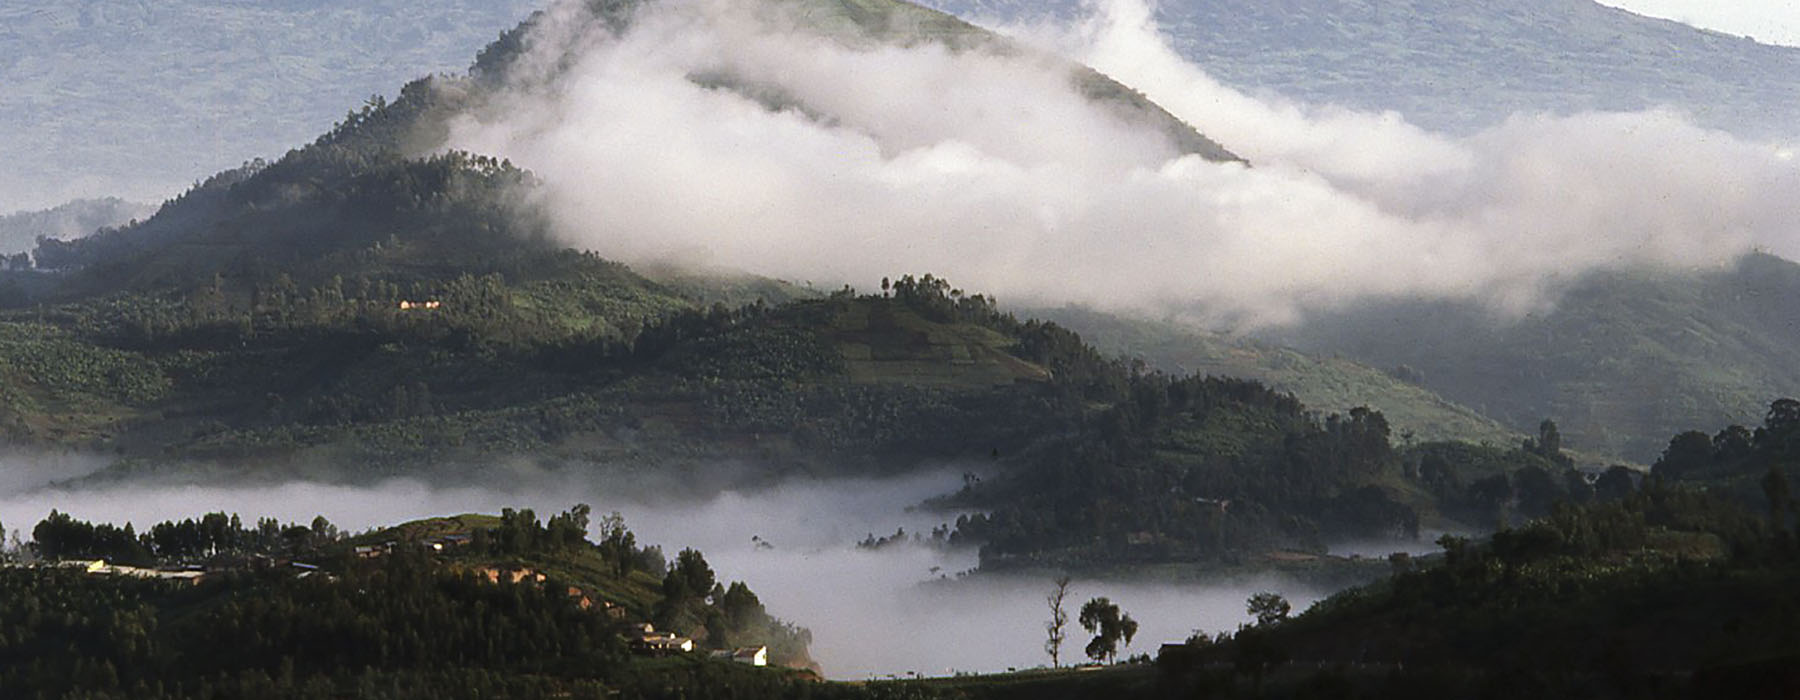 All our Rwanda<br class="hidden-md hidden-lg" /> Travel Bucket List